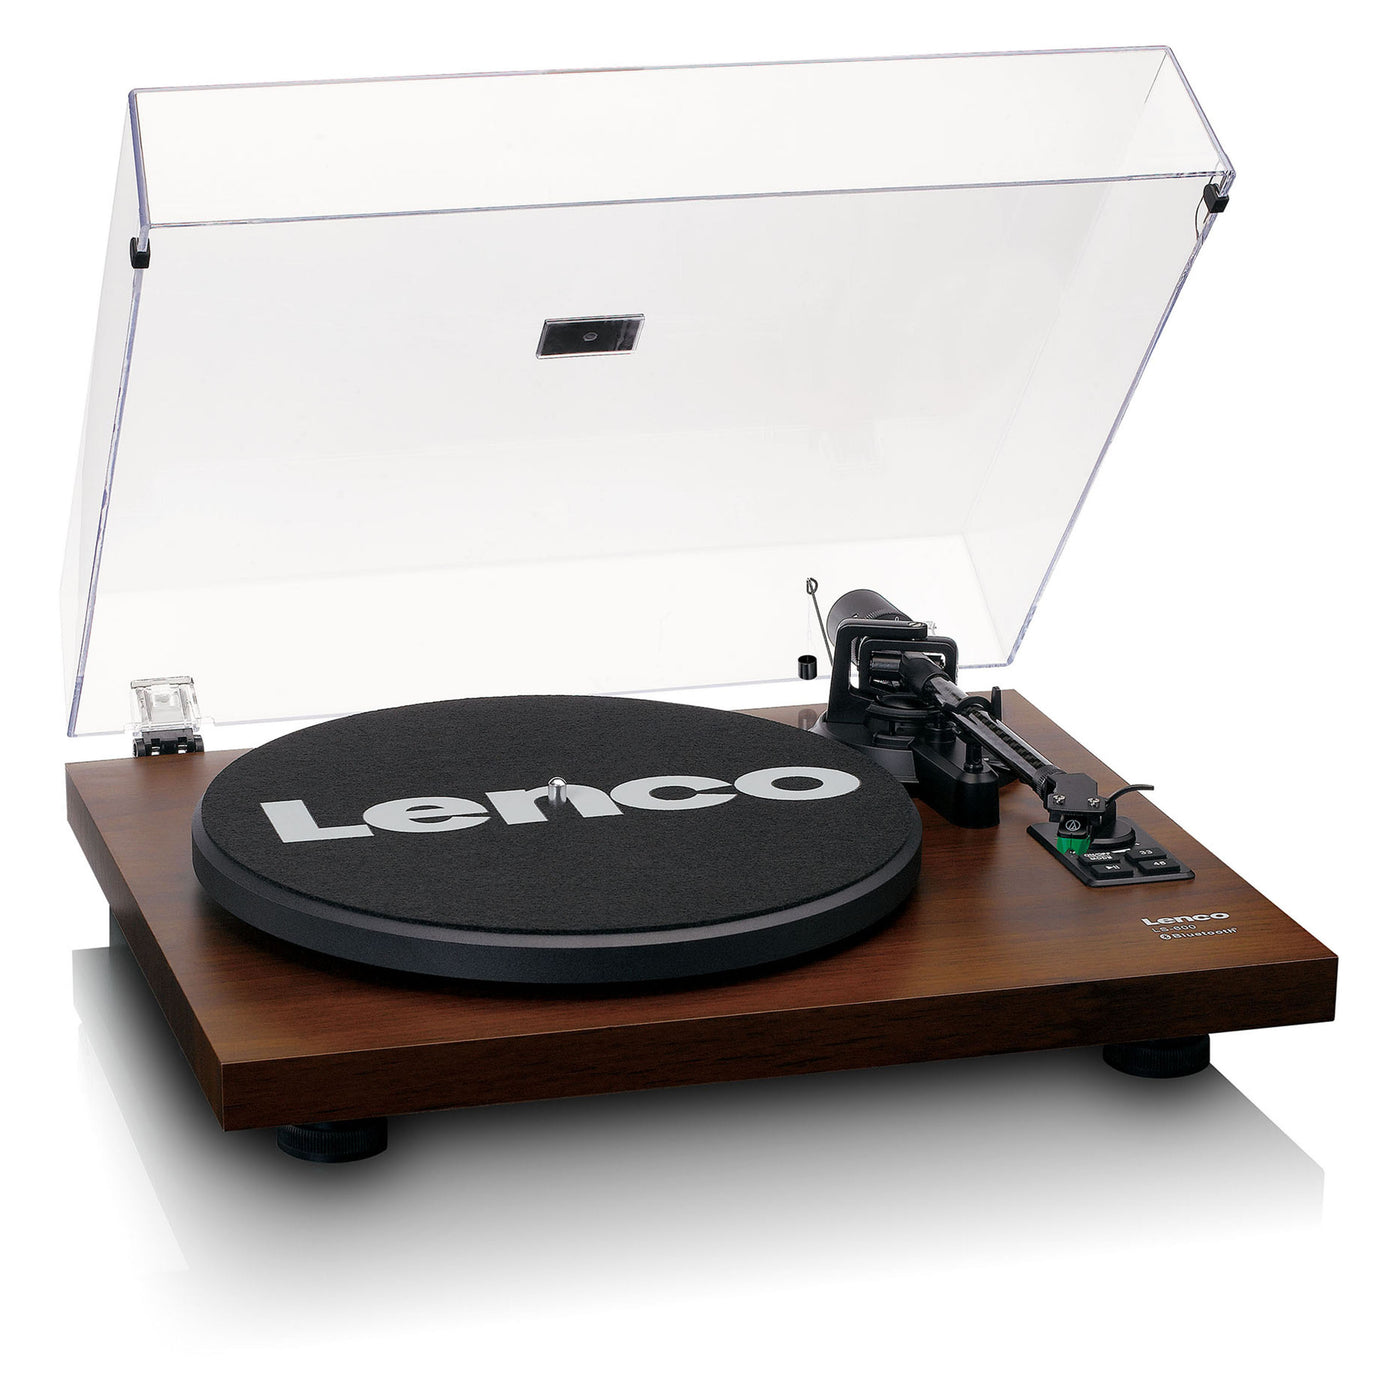 Lenco LS-600WA -Tourne-disque avec amplificateur intégré et Bluetooth® plus 2 haut-parleurs externes - Bois